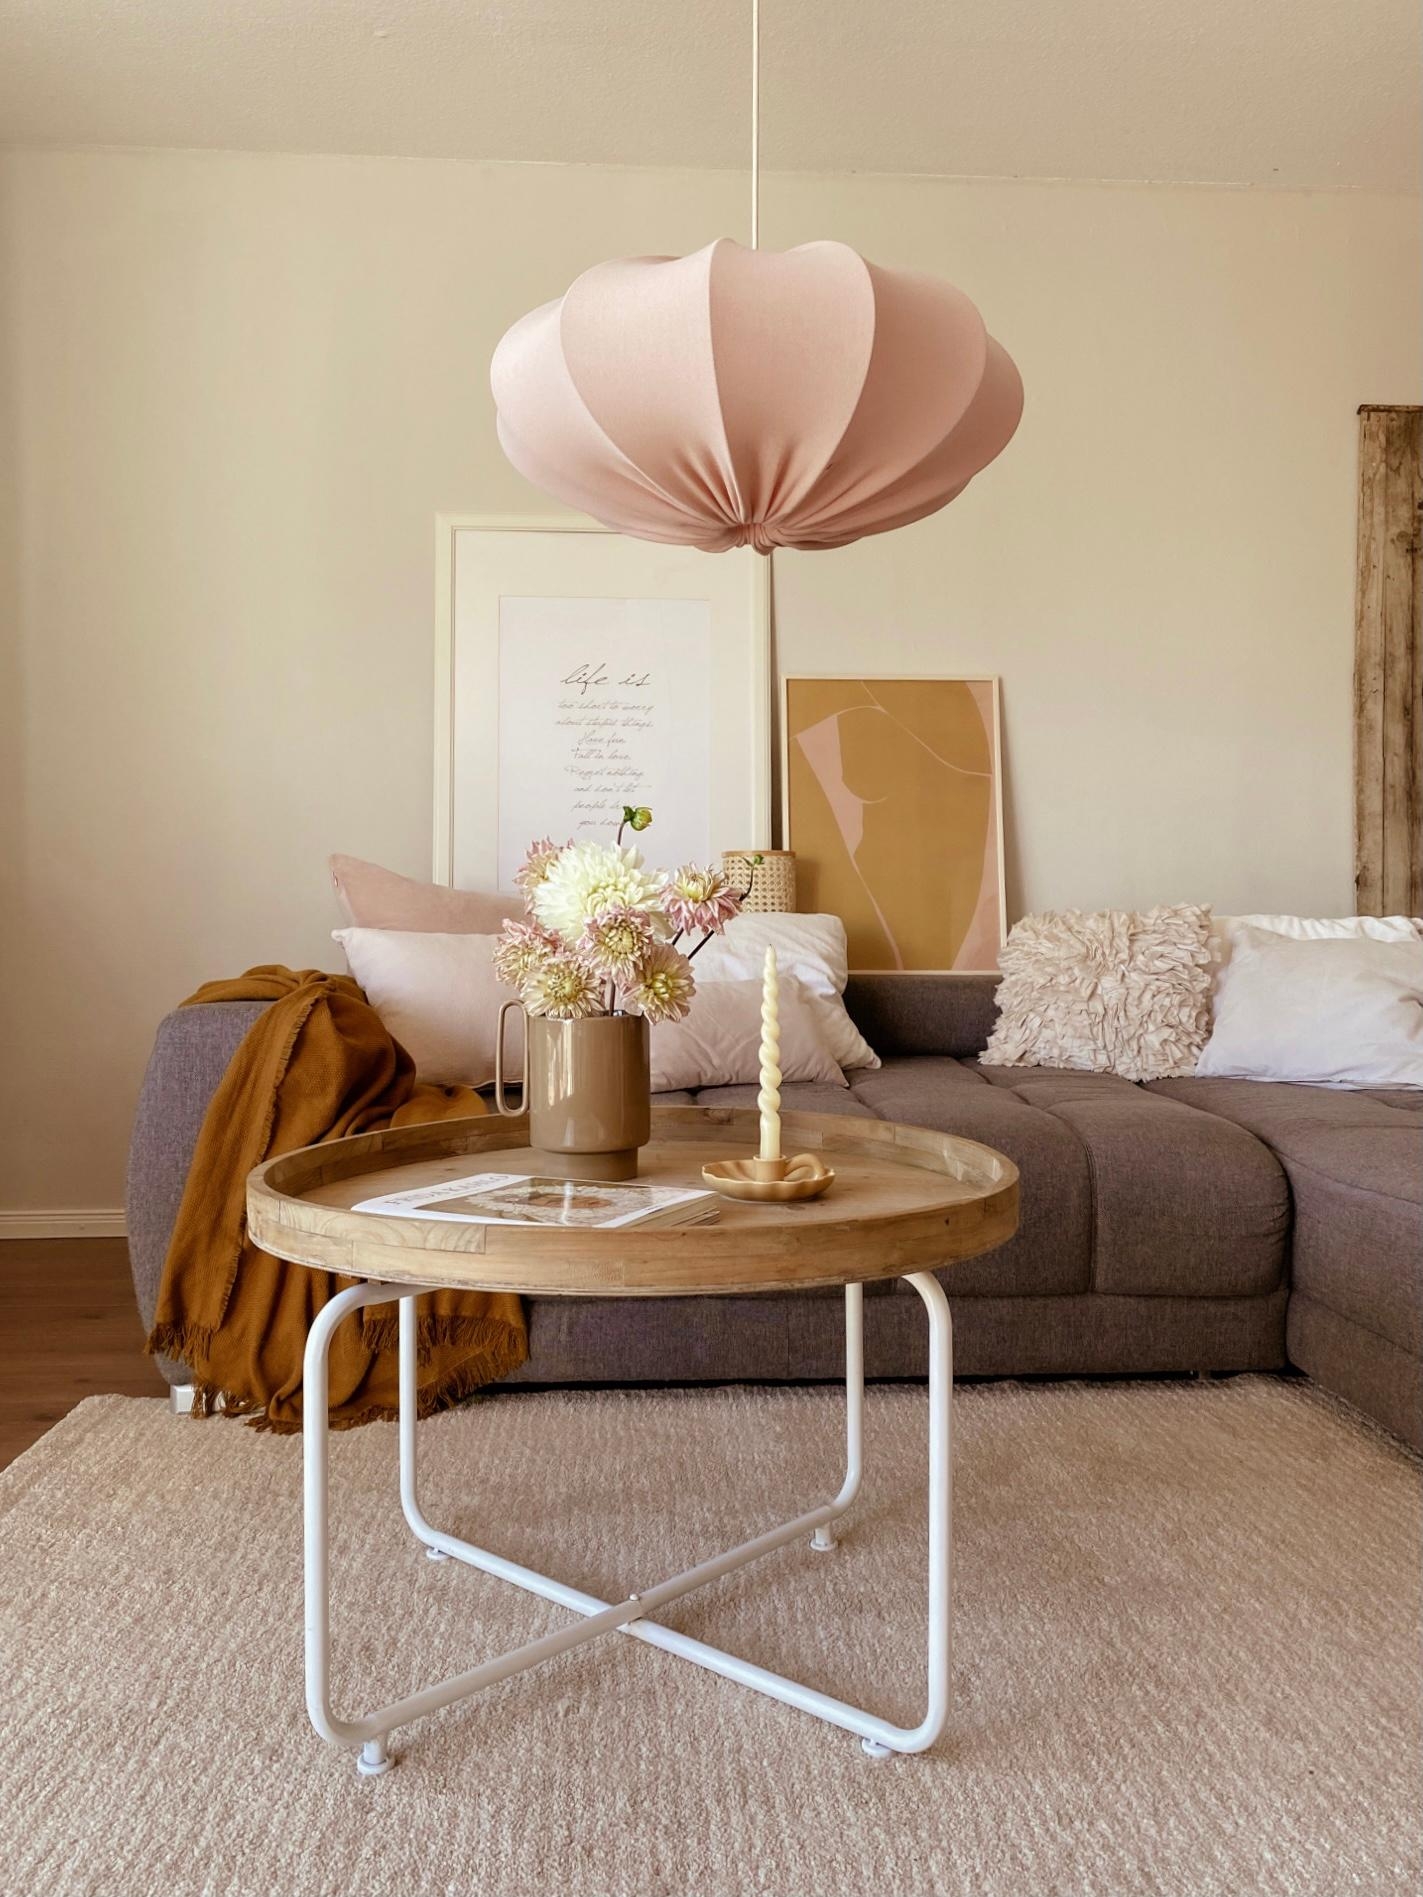 Wohnzimmer 
#livingroom#dekoliebe#rosarosa#cozyliving#wohnenunddekorieren#homestyle#couch